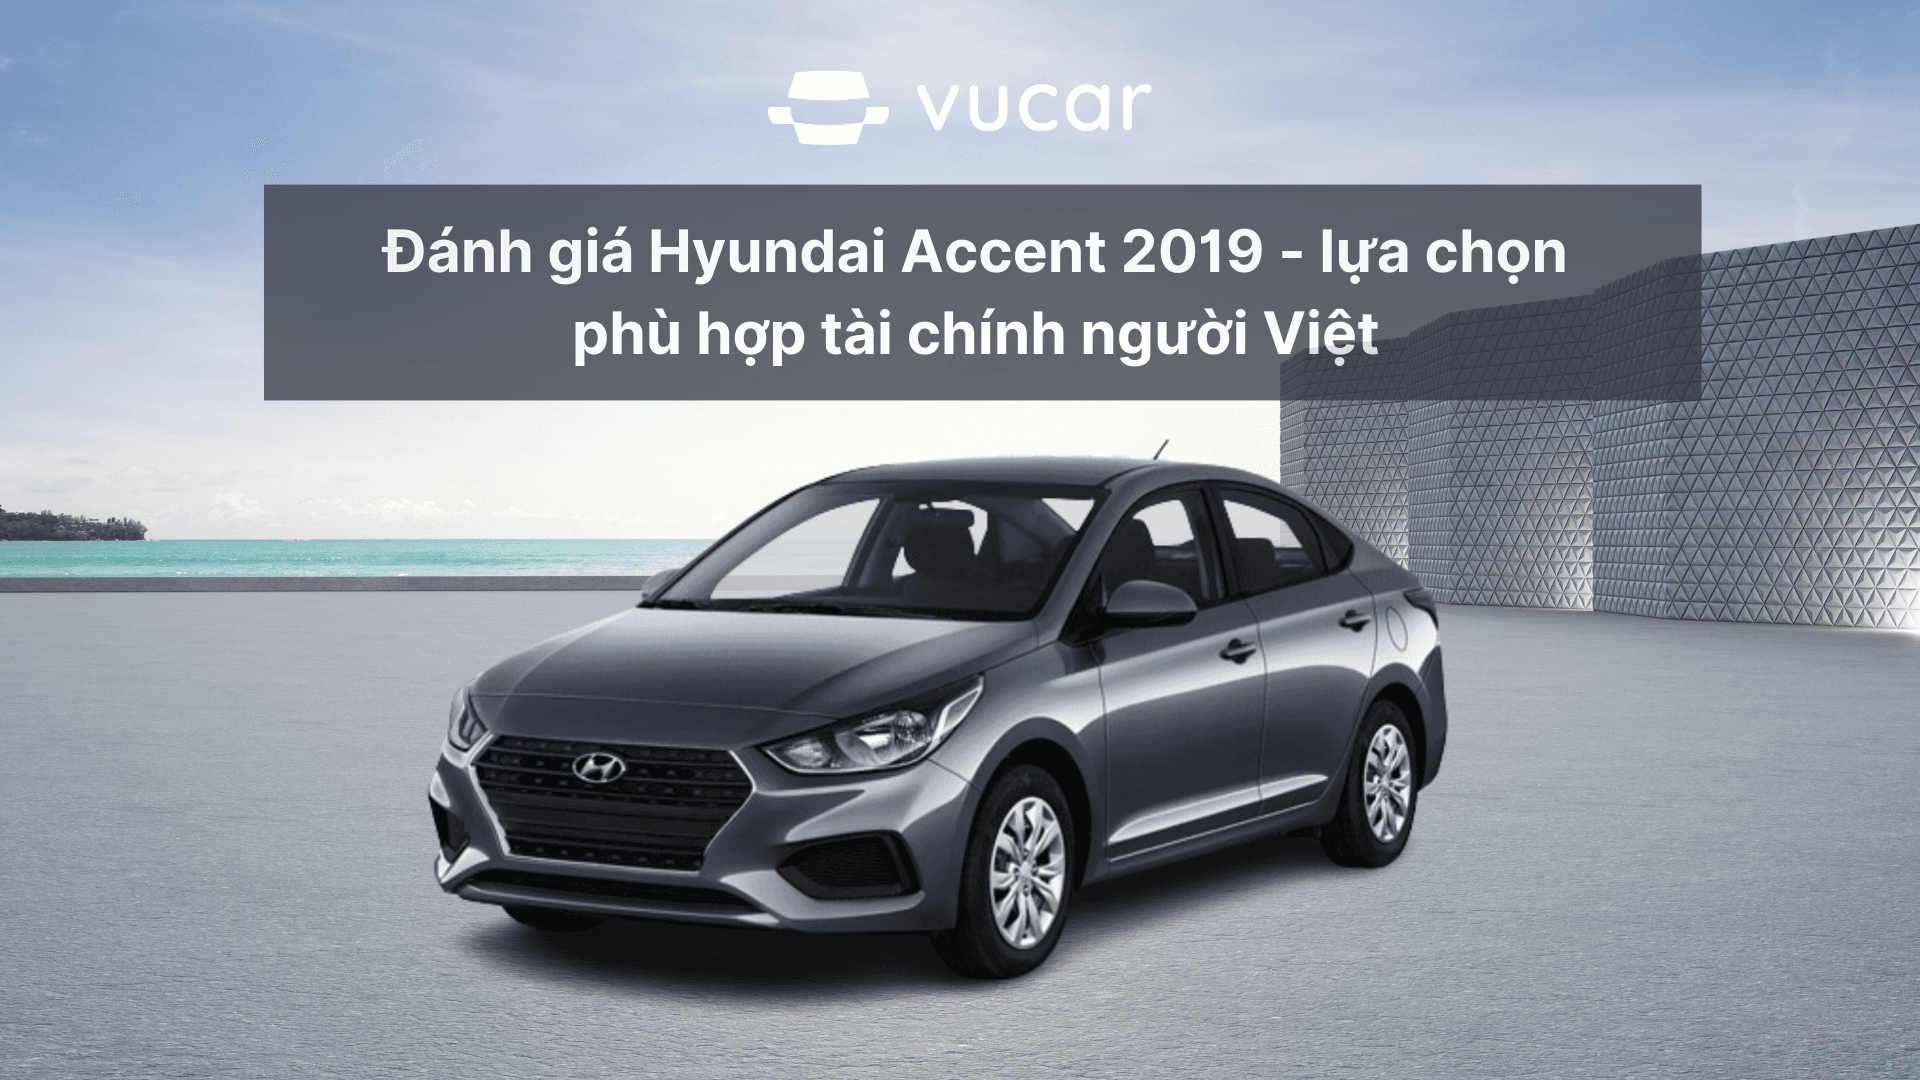 Đánh giá Hyundai Accent 2019 